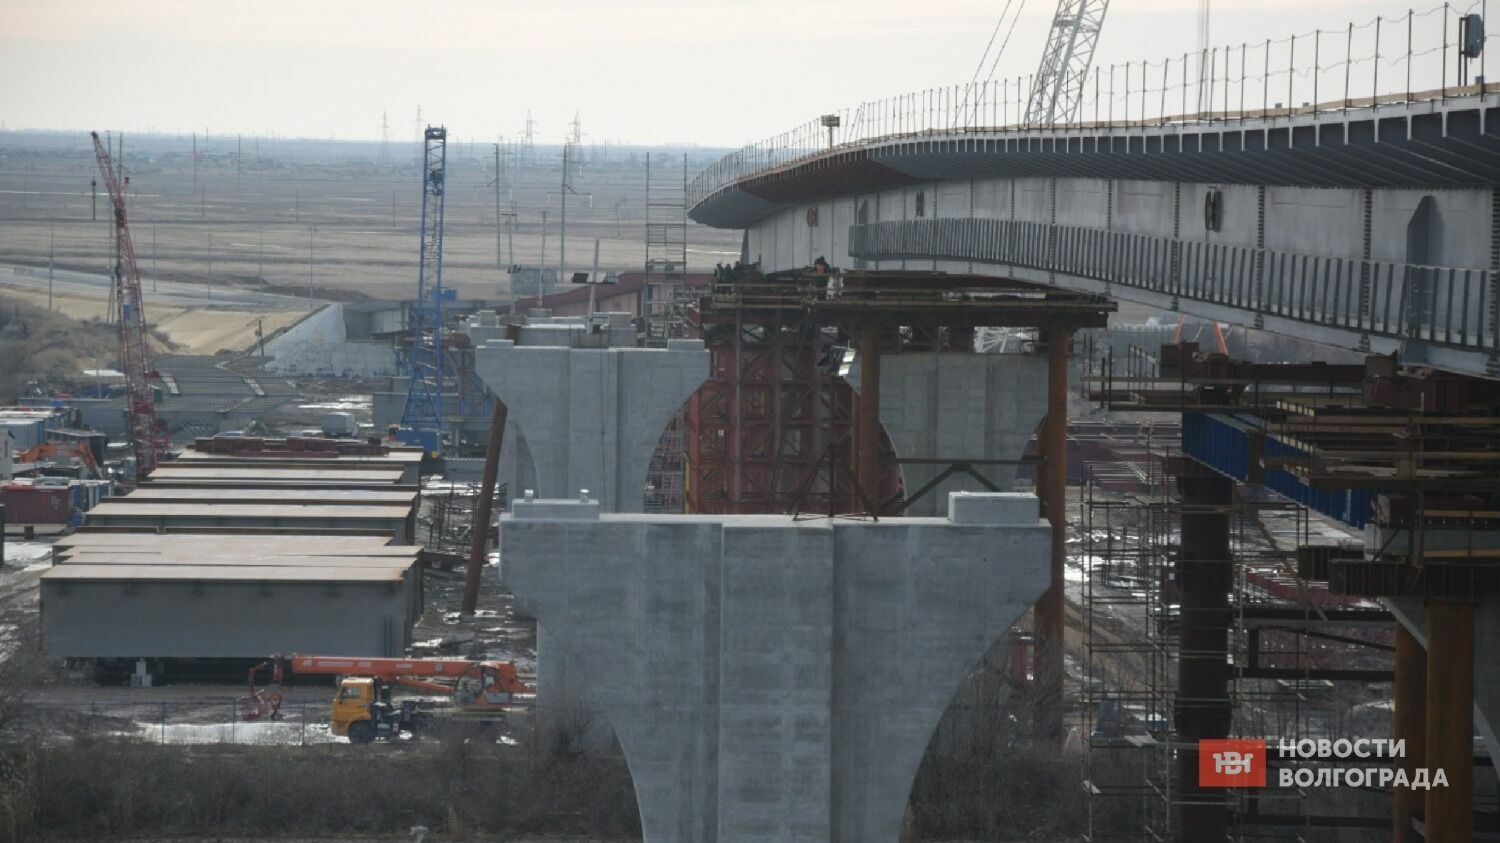 Надвижка пролетов моста через ВДСК.